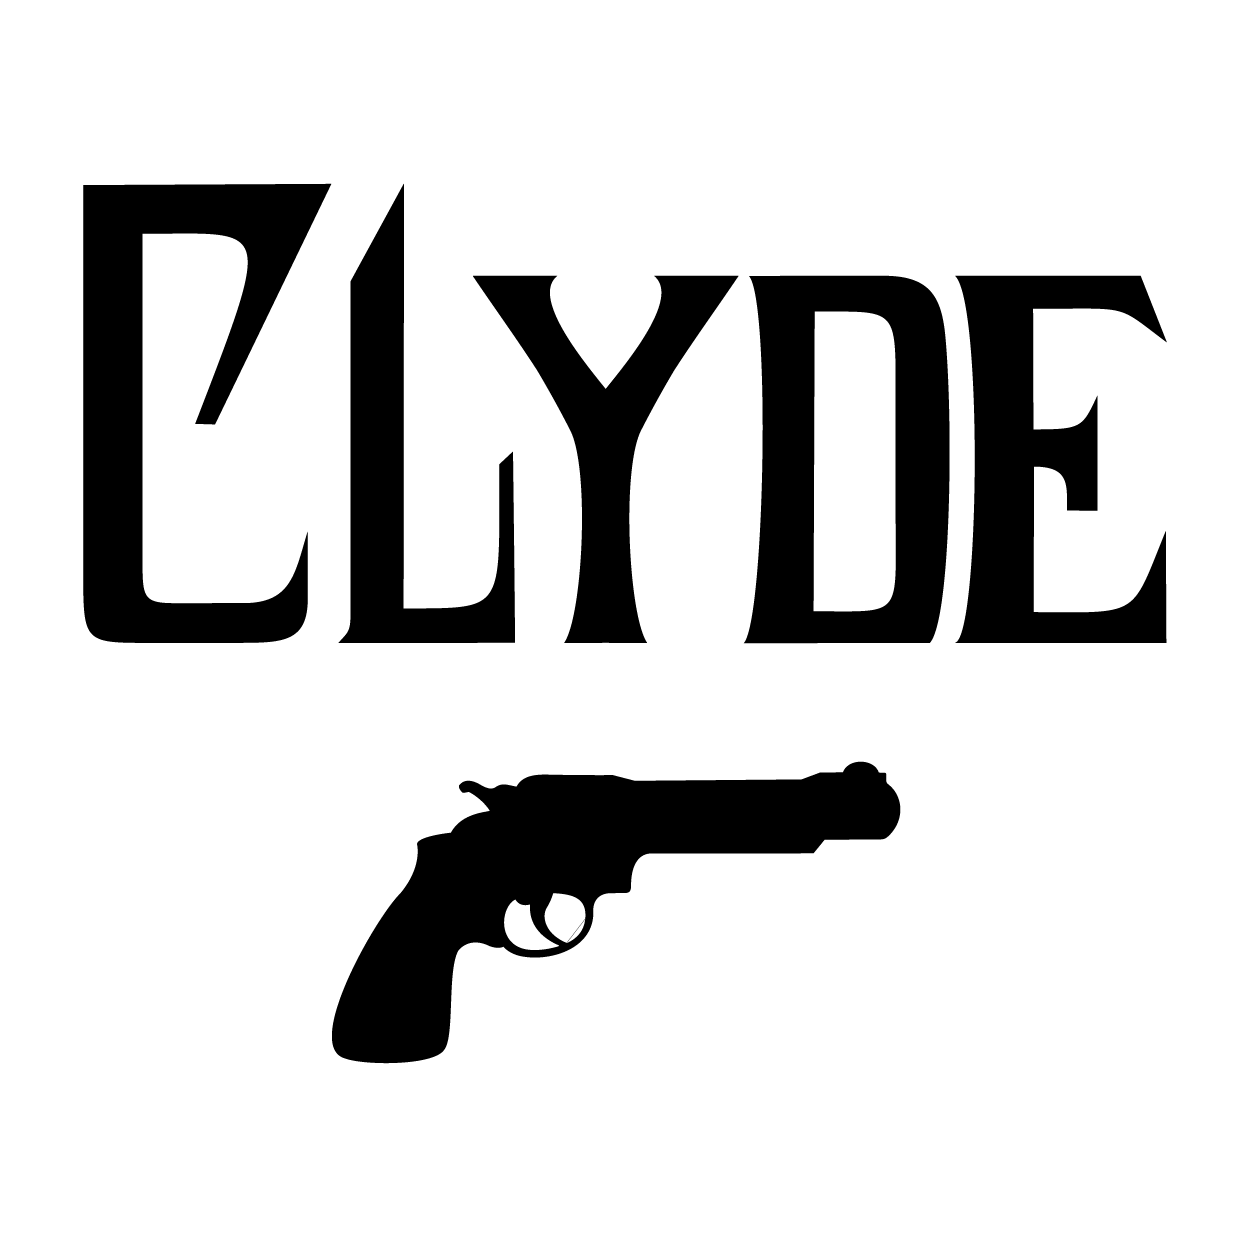 logo : CLYDE